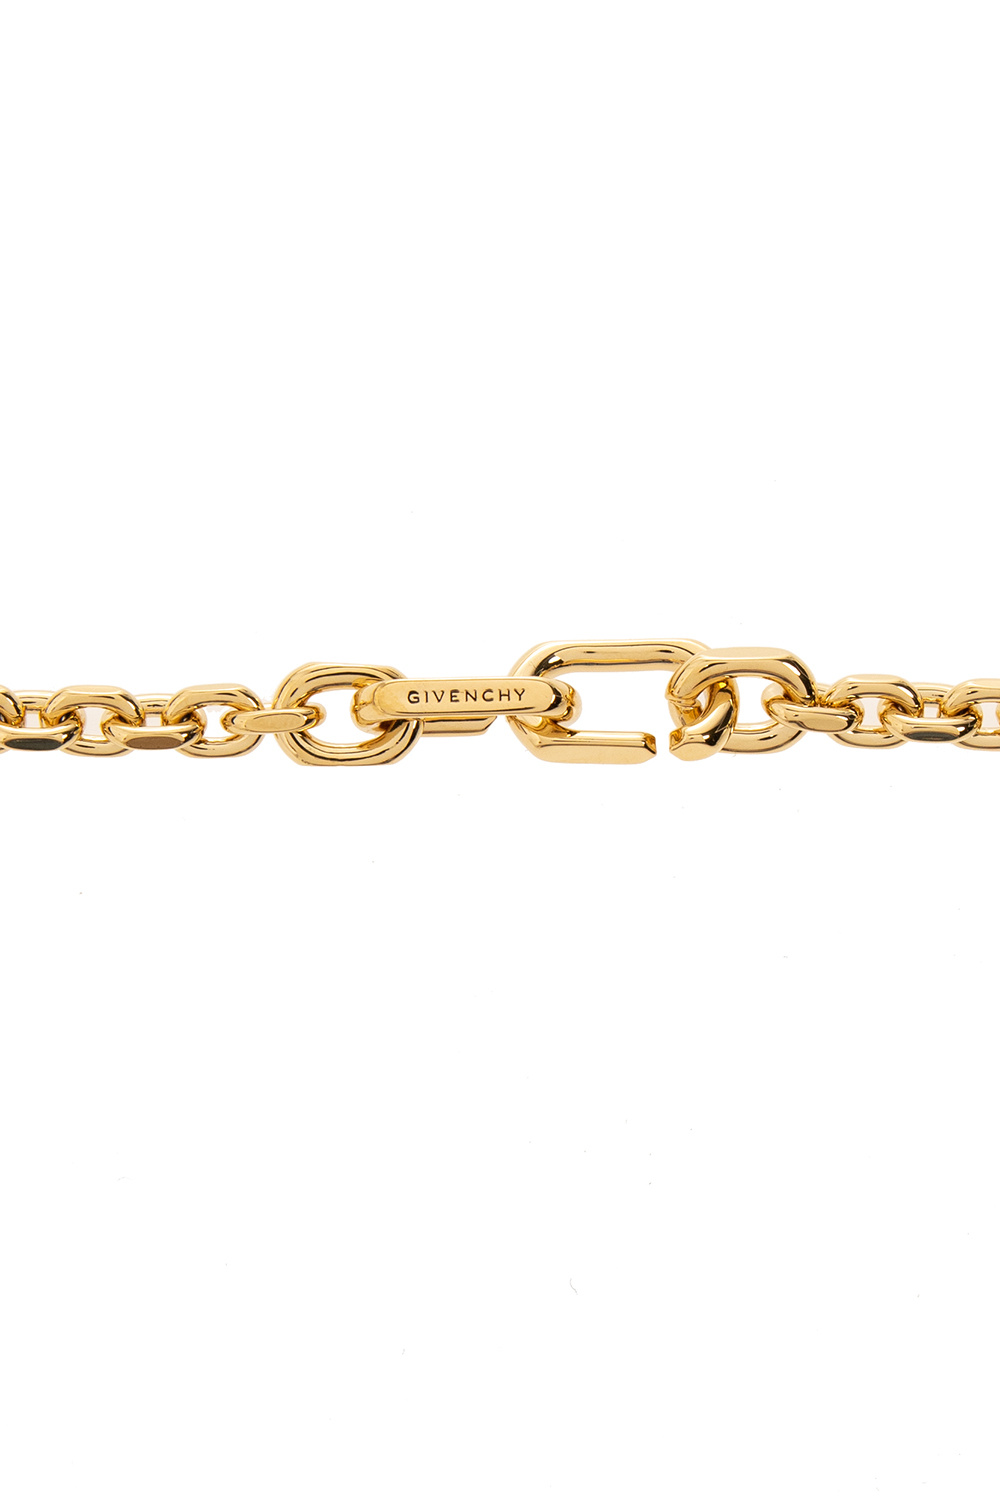 givenchy belt Brass necklace